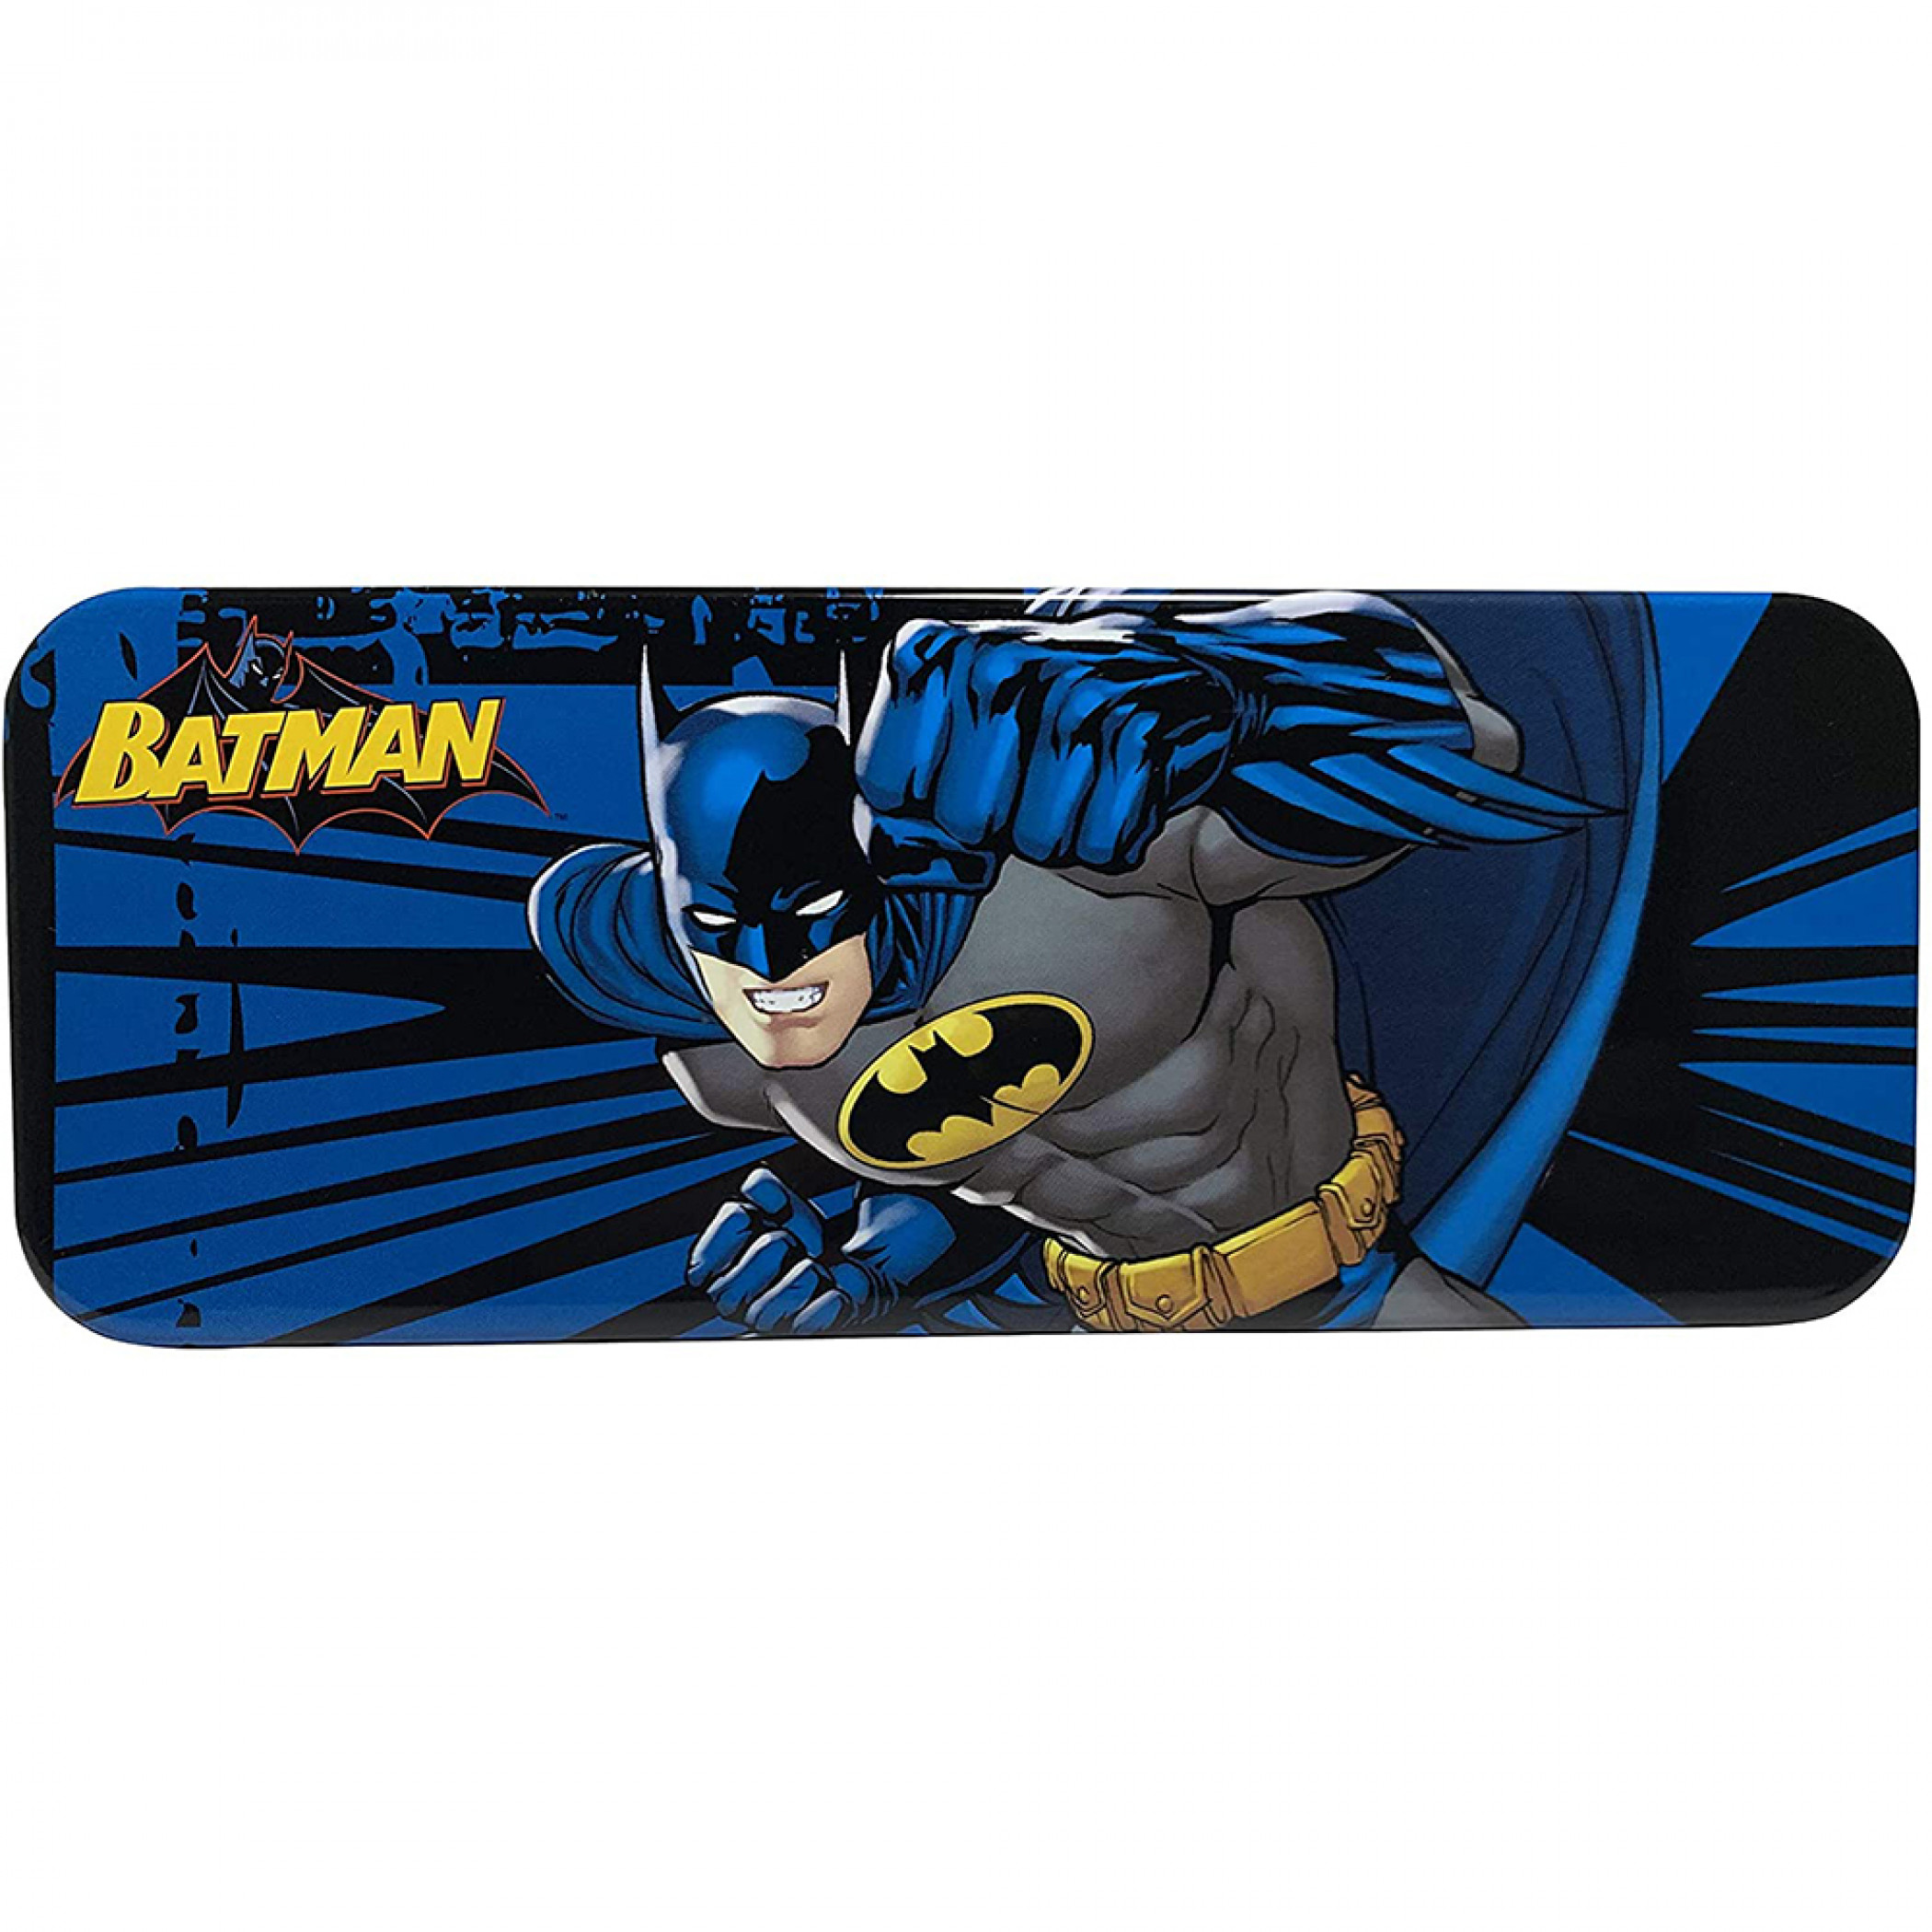 Batman DC Comics The Batman Pencil Box